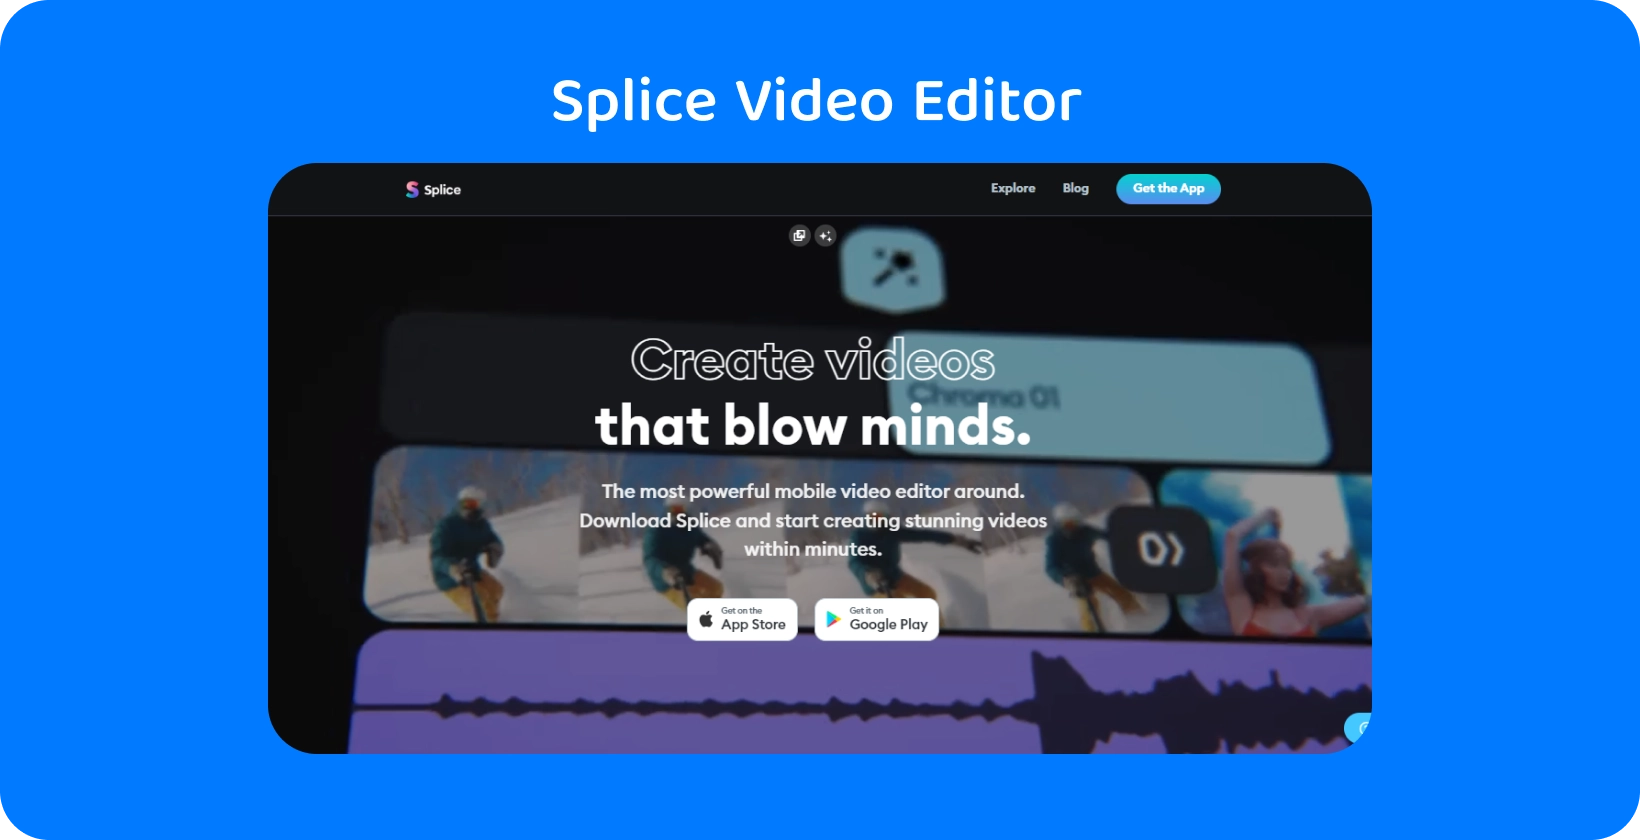 Splice app-promotie op een smartphone en prijst het aan als de krachtigste mobiele video-editor voor het maken van verbluffende video's.